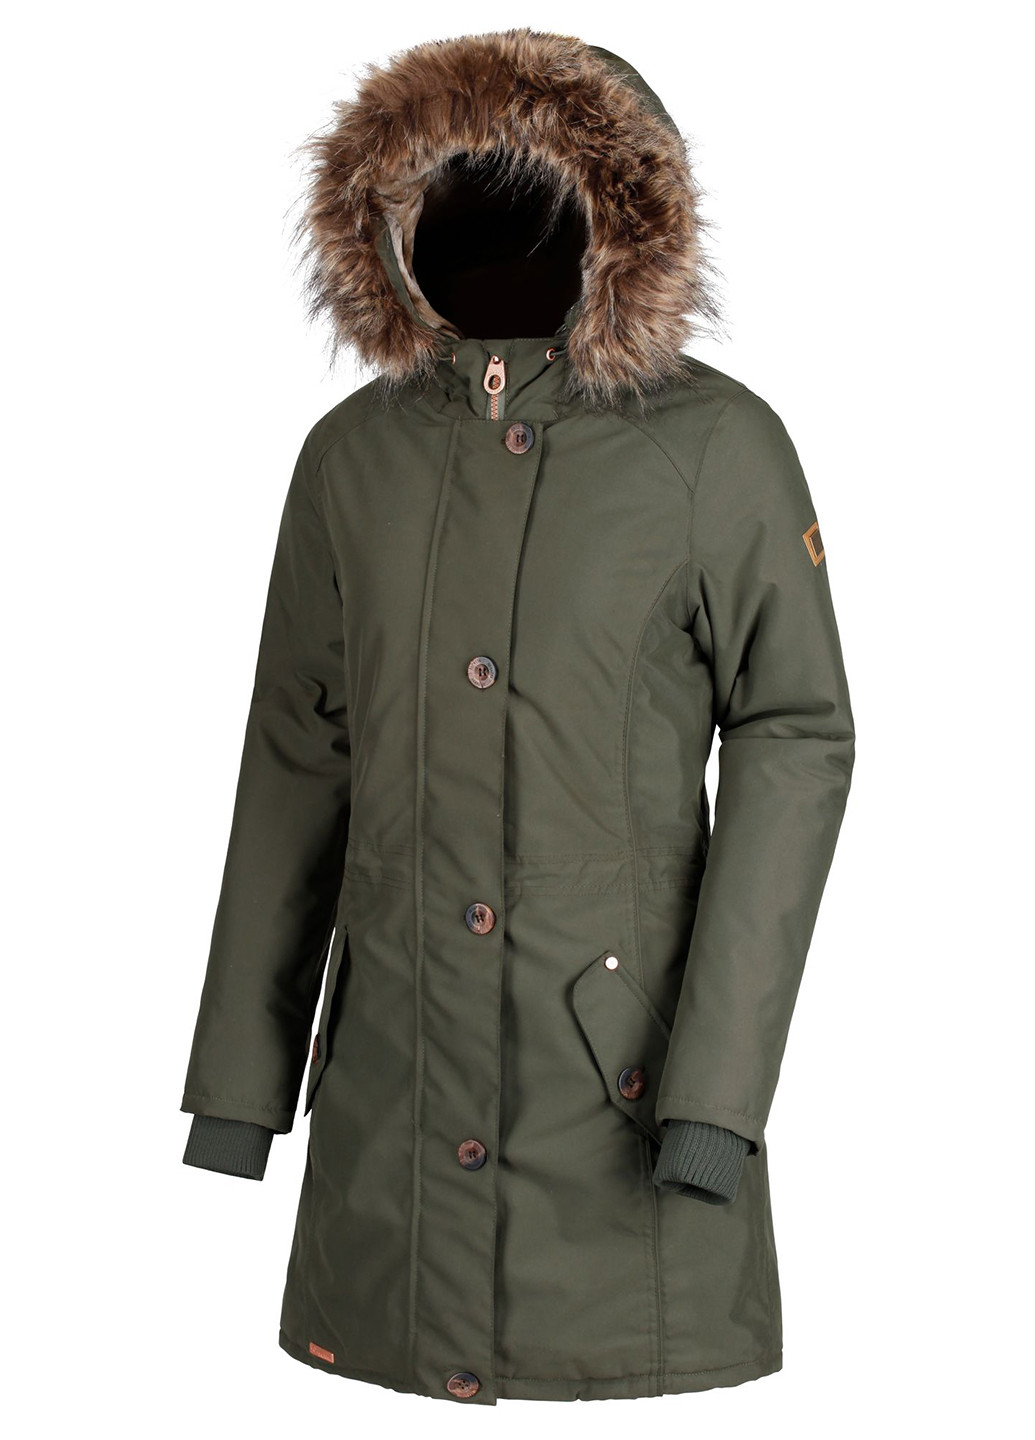 Оливковая (хаки) зимняя куртка Regatta